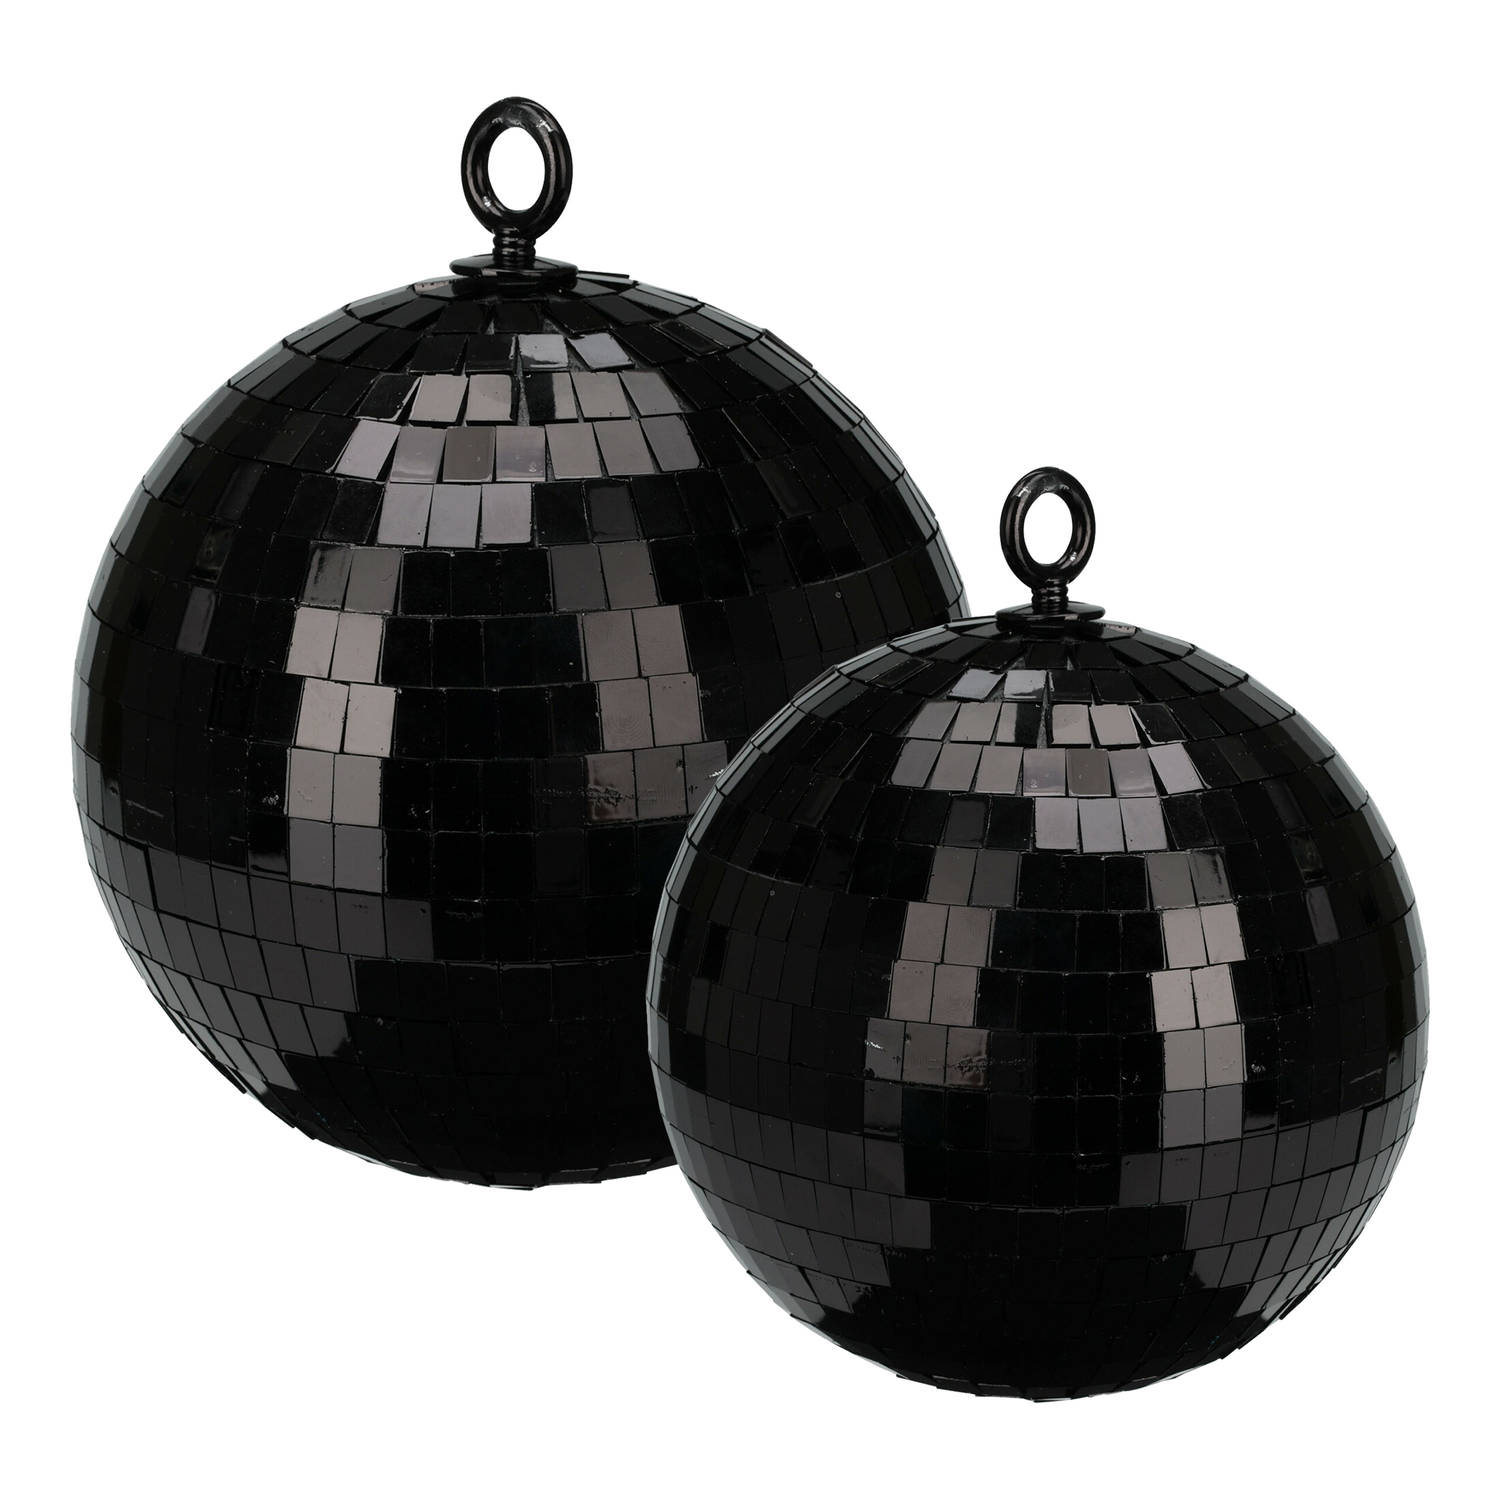 Grote discobal kerstballen 2x stuks zwart 15 en 18 cm kunststof Kerstbal